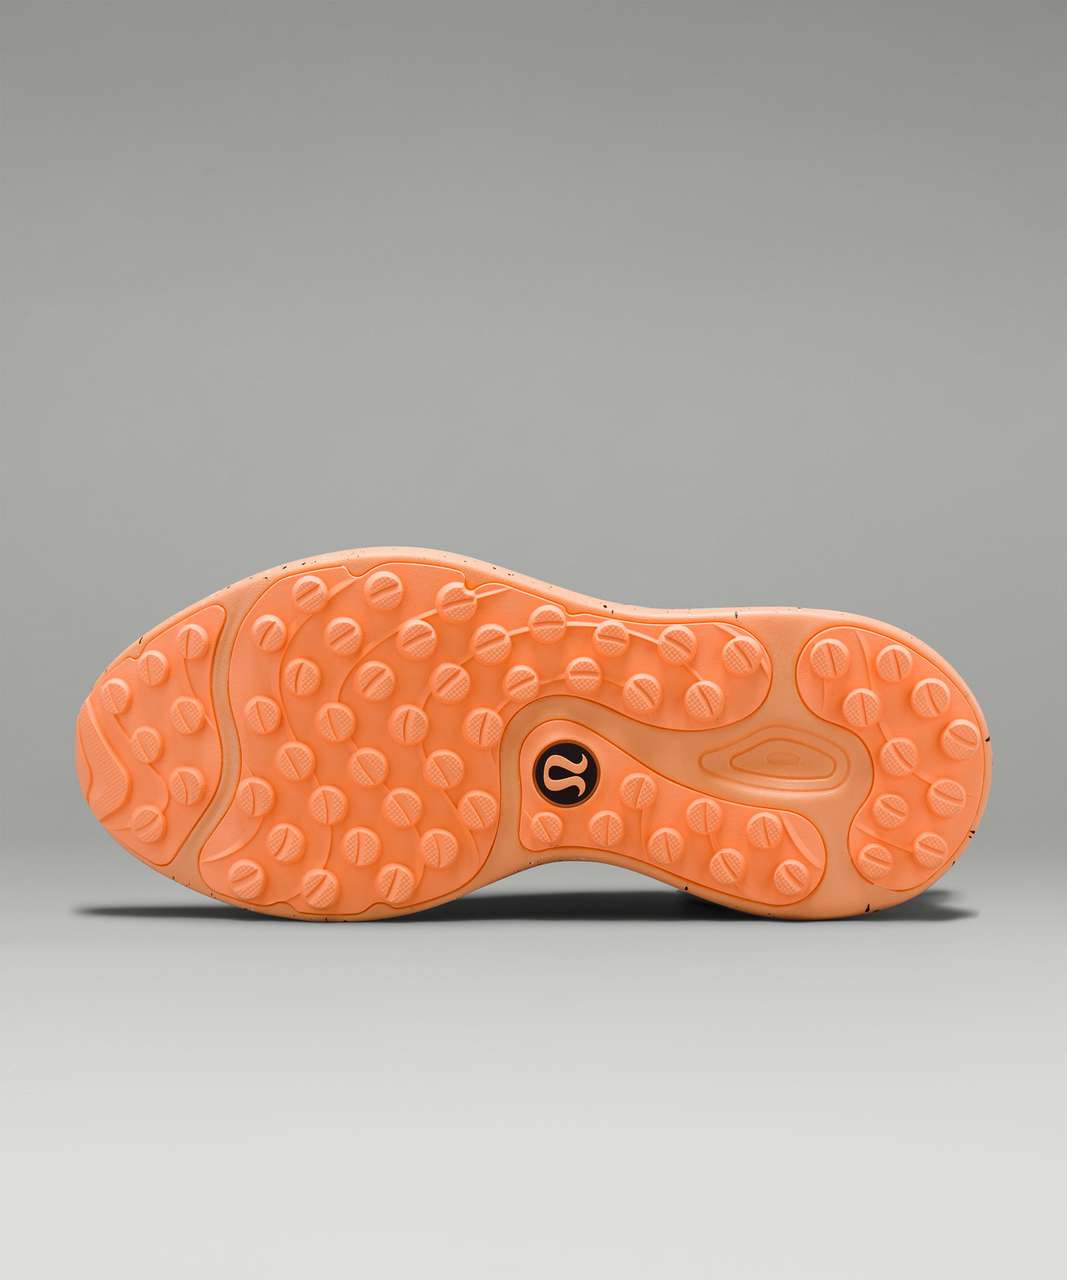 Lululemon Blissfeel Trail Womens Running Shoe - Light Vapor / Bone / Florid Orange